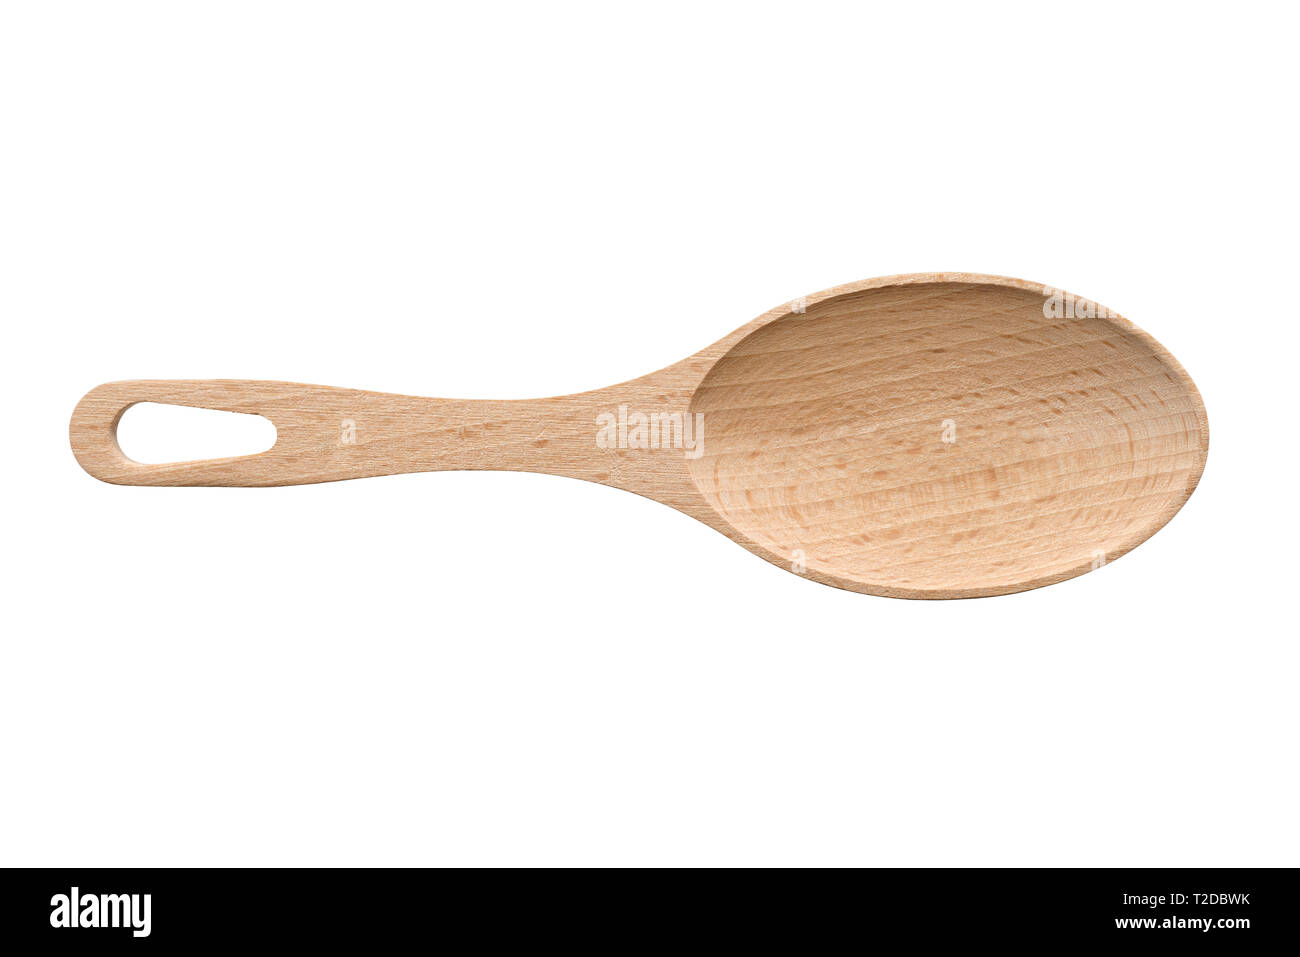 Oggetti isolati: grande a mano il cucchiaio di legno, su sfondo bianco Foto Stock